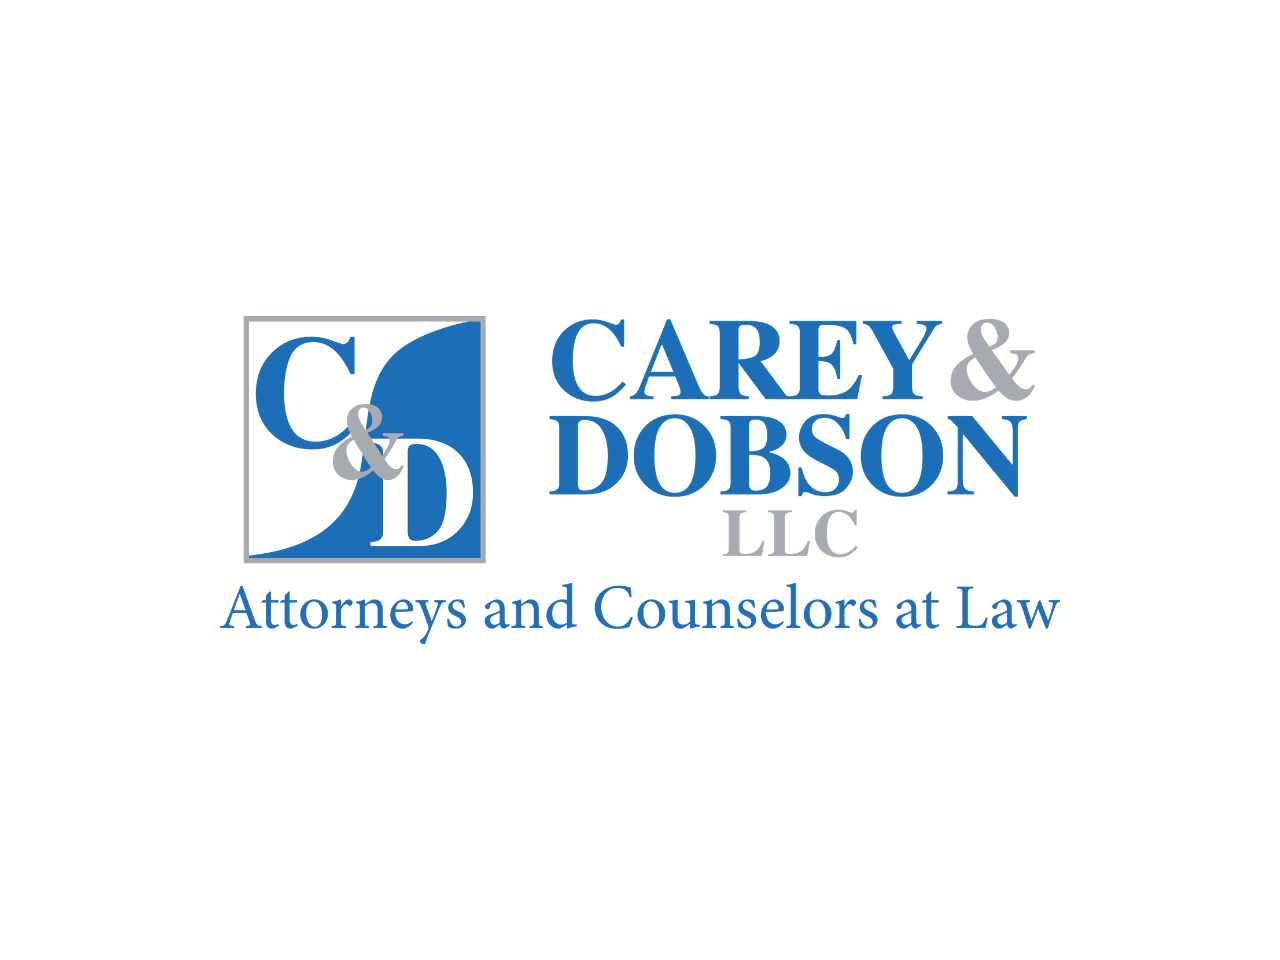 Carey & Dobson LLC